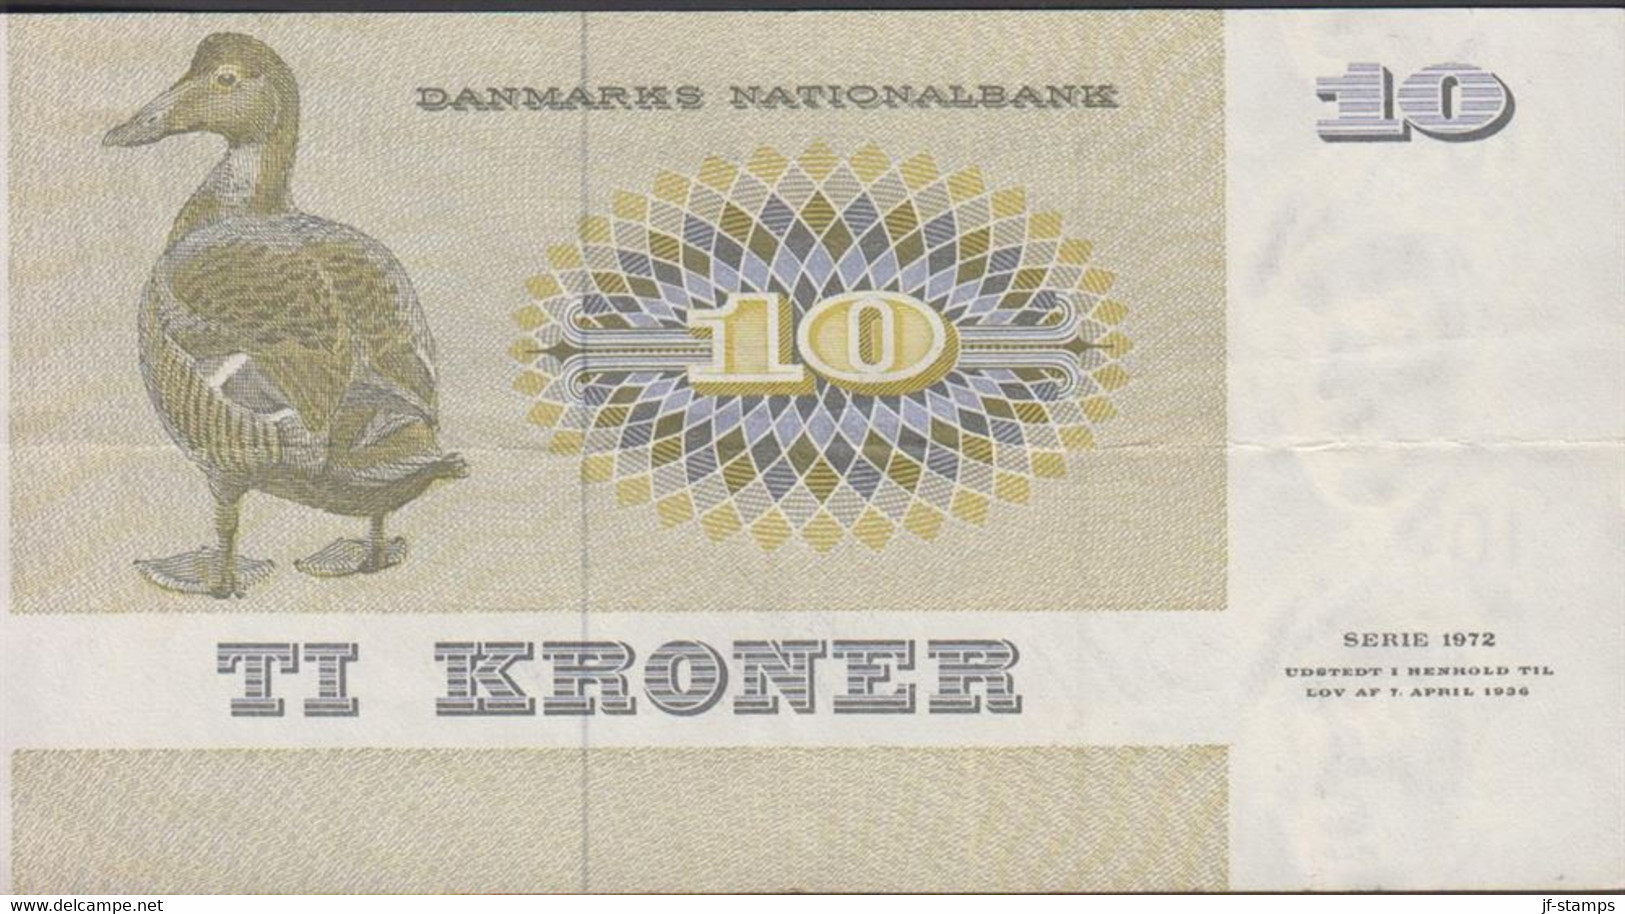 1972. DANMARK. DANMARKS NATIONALBANK 10 KRONER SERIE 1972. Fold.  - JF429806 - Dänemark